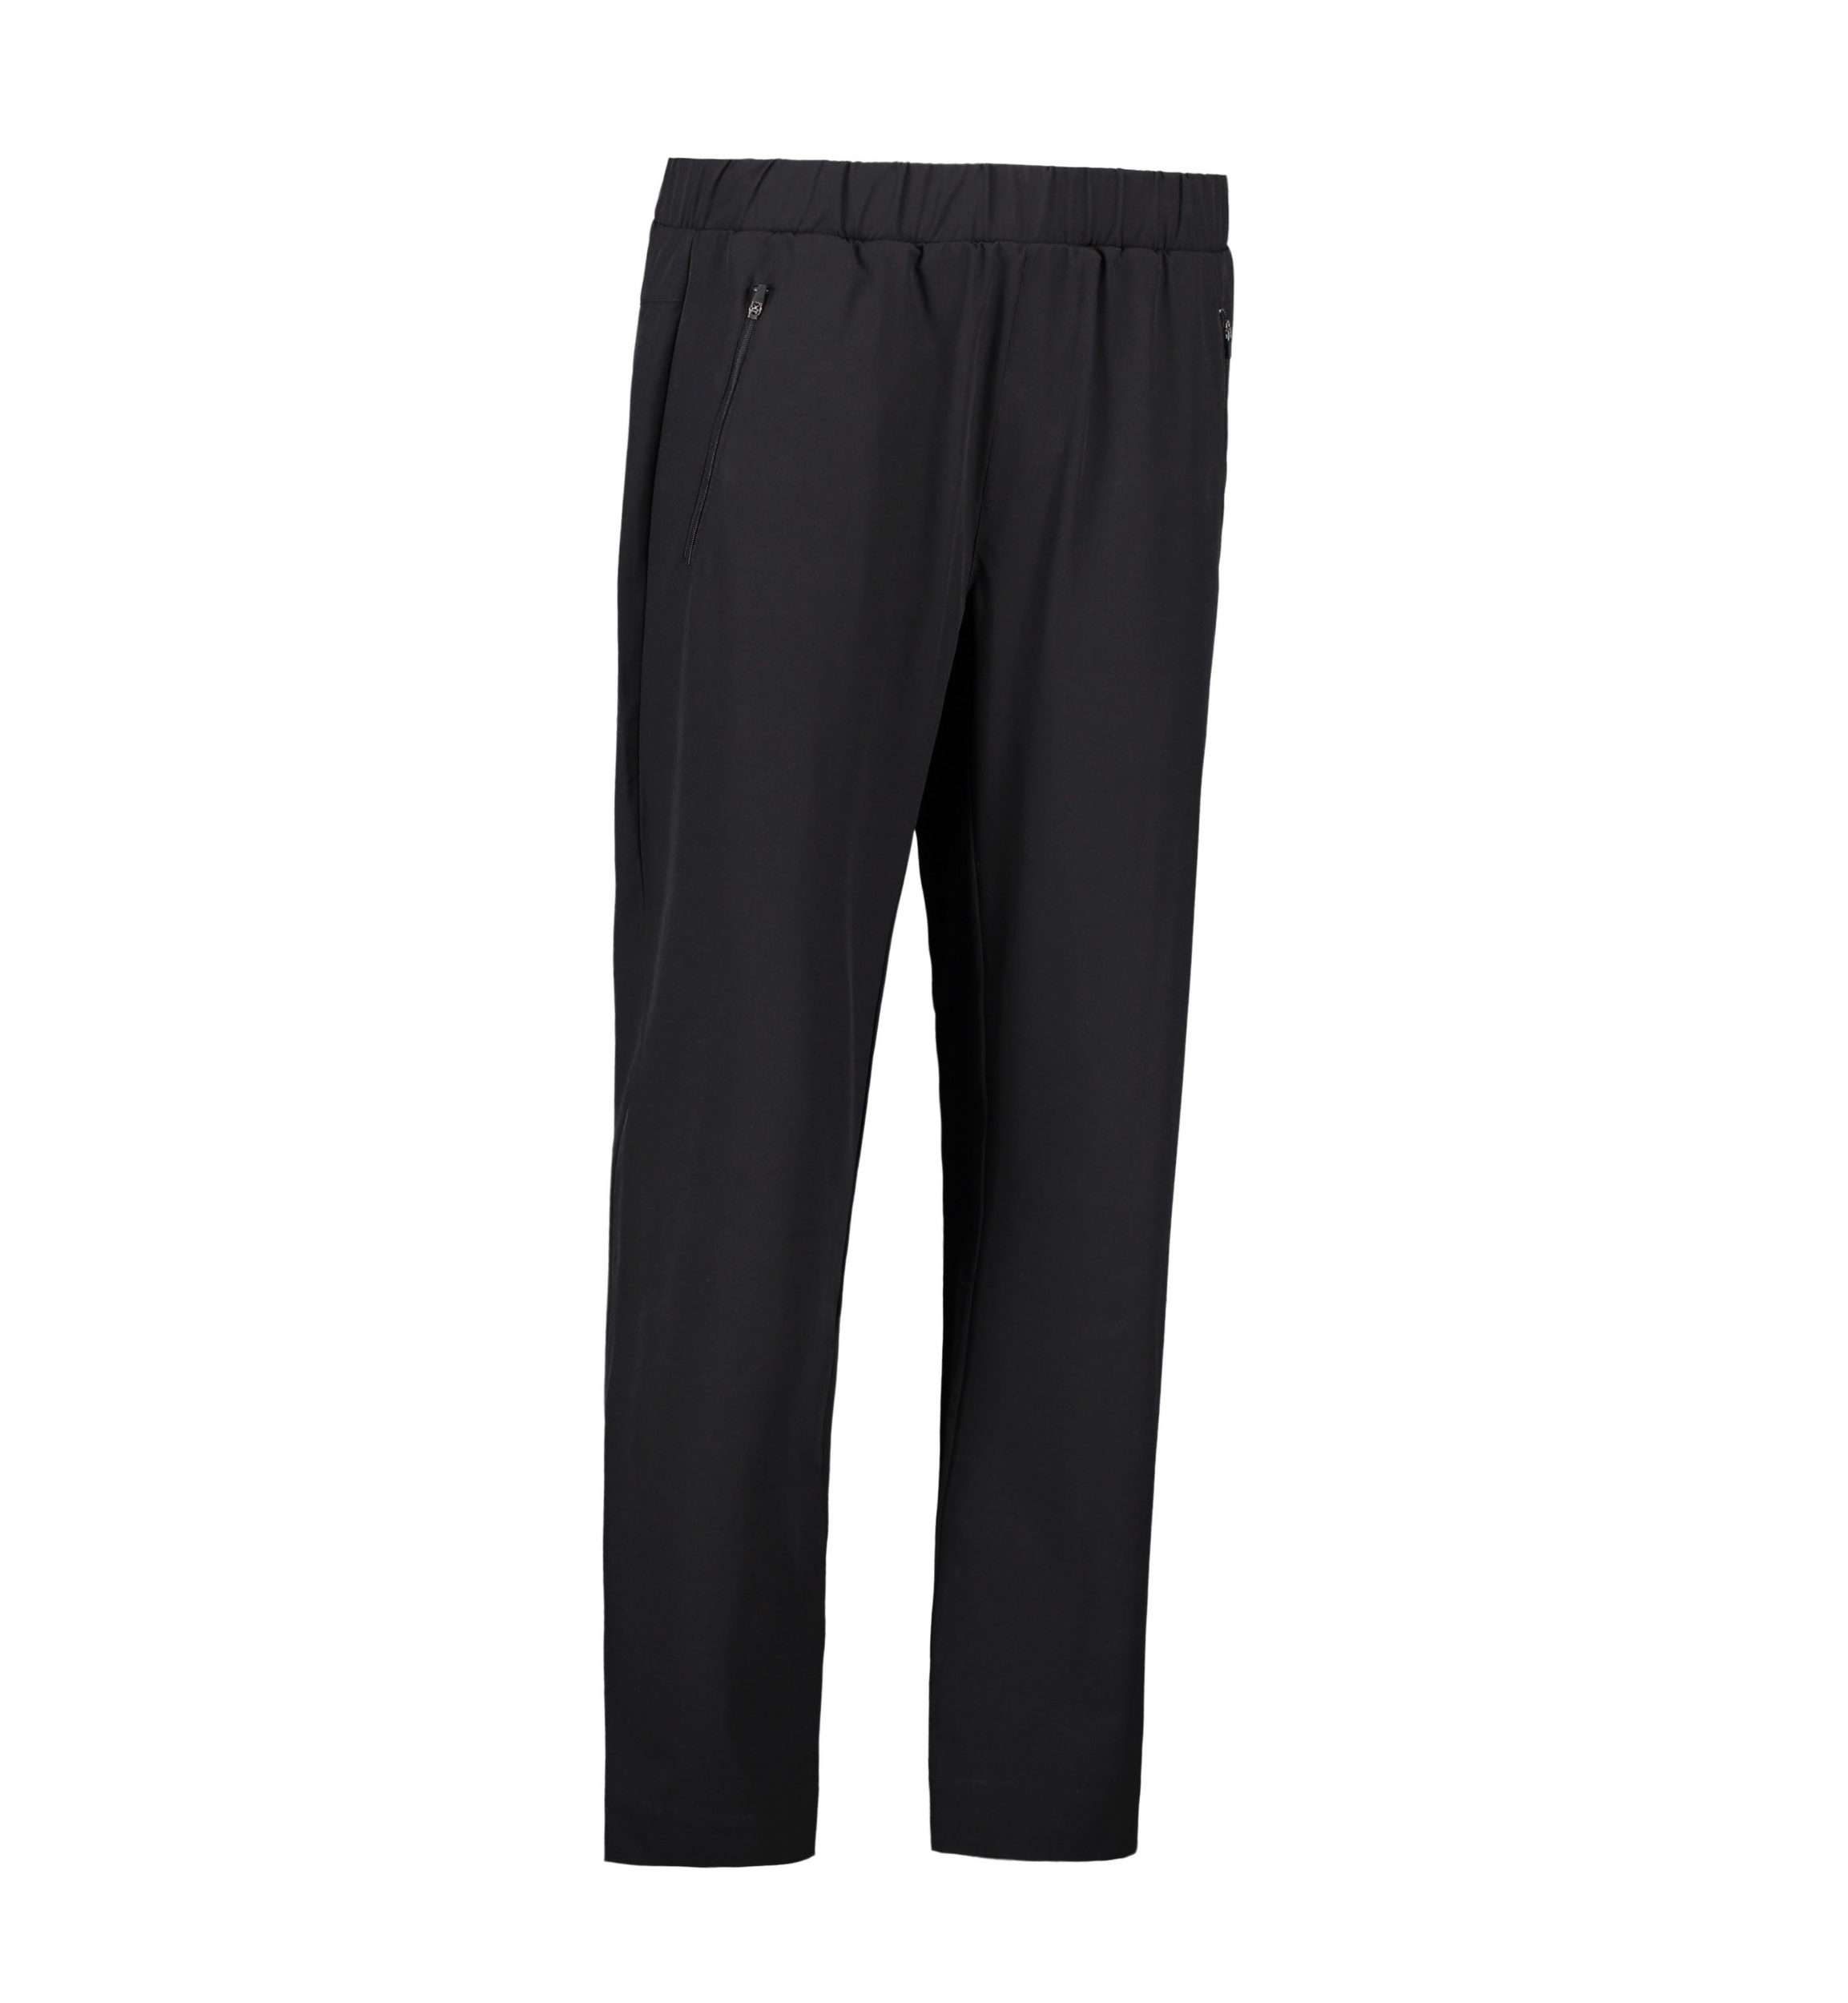 Billede af Stretch bukser til mænd i sort - 3XL hos Sygeplejebutikken.dk